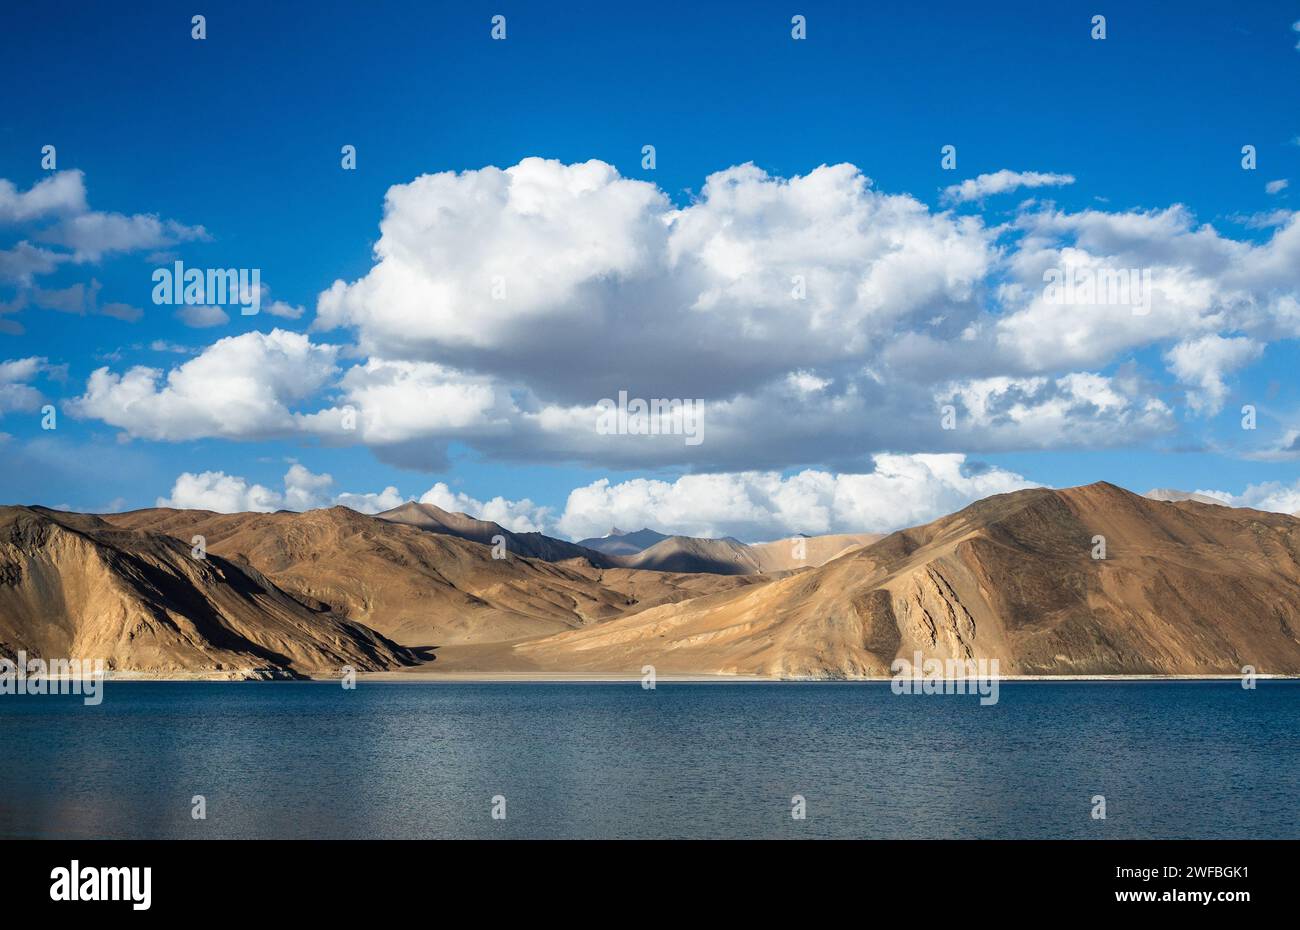 La bellezza incontaminata di Leh Ladakh è in mostra in questa armoniosa miscela di elementi. Un tranquillo lago ad alta quota rispecchia il cielo in continuo cambiamento Foto Stock